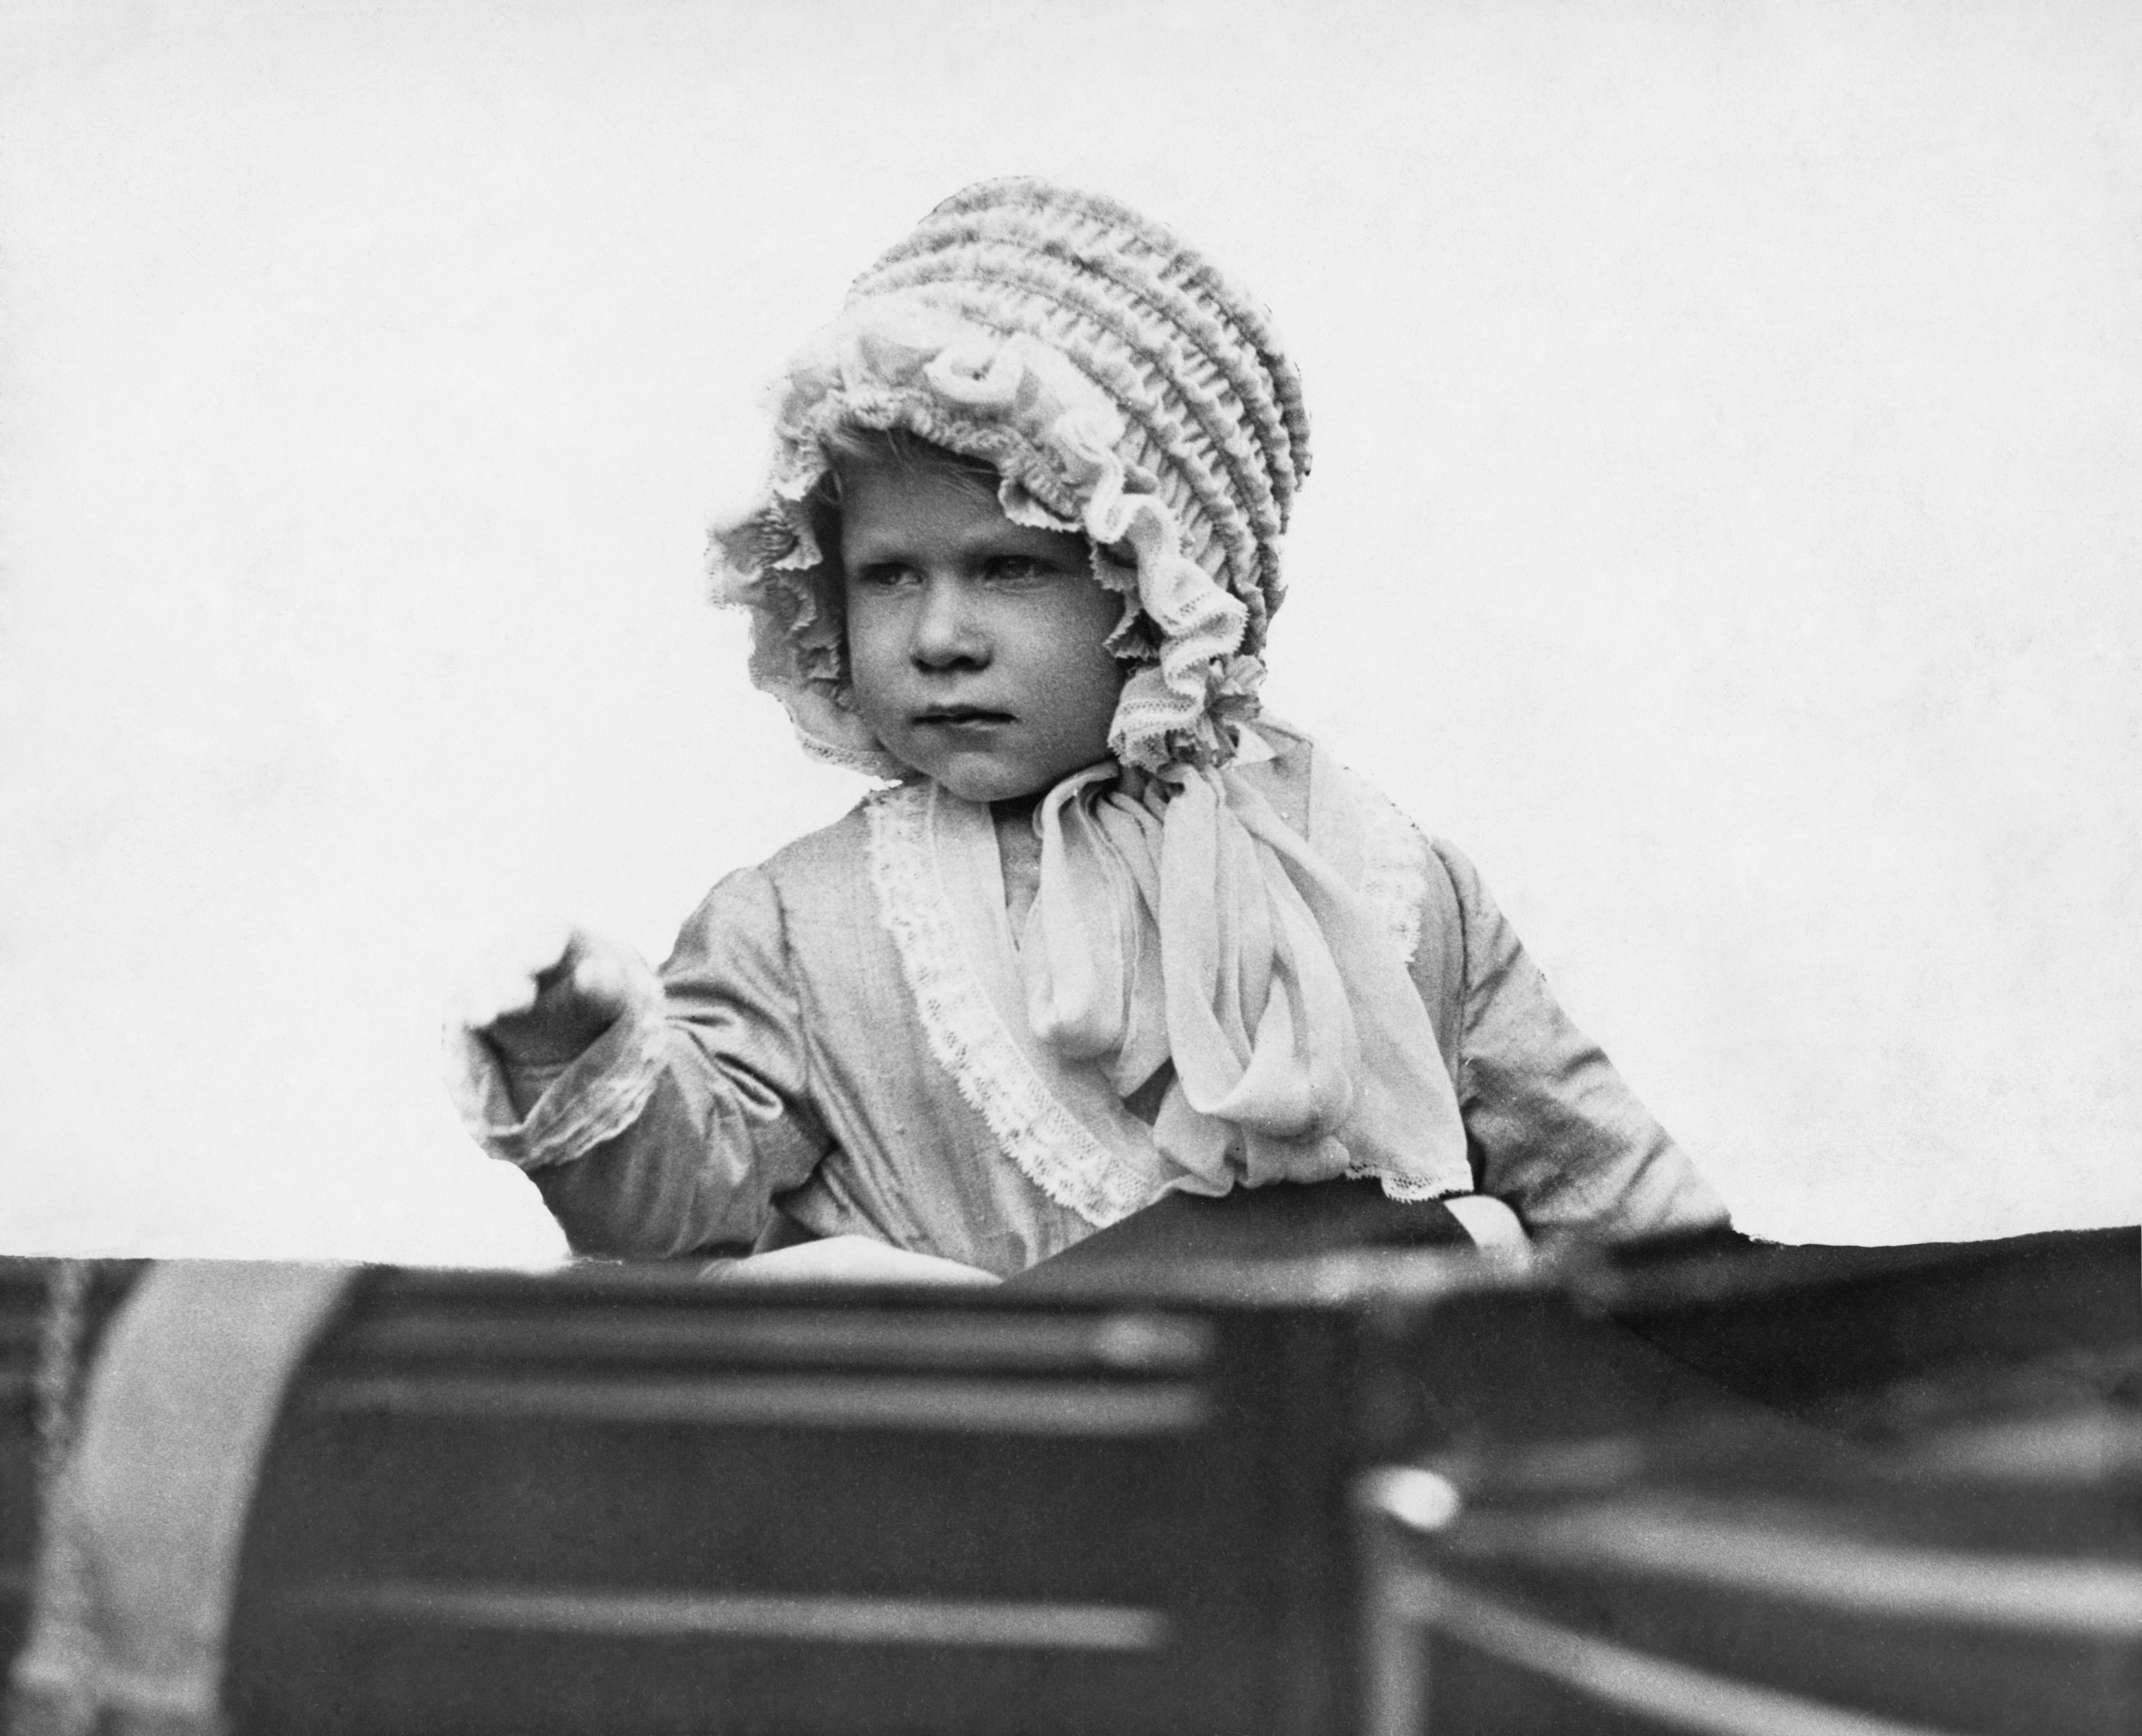 Ιστορικές εικόνες της βασίλισσας Ελισάβετ Β'.  Σε ηλικία 10 ετών έγινε διάδοχος του βρετανικού θρόνου - Εικόνα 1